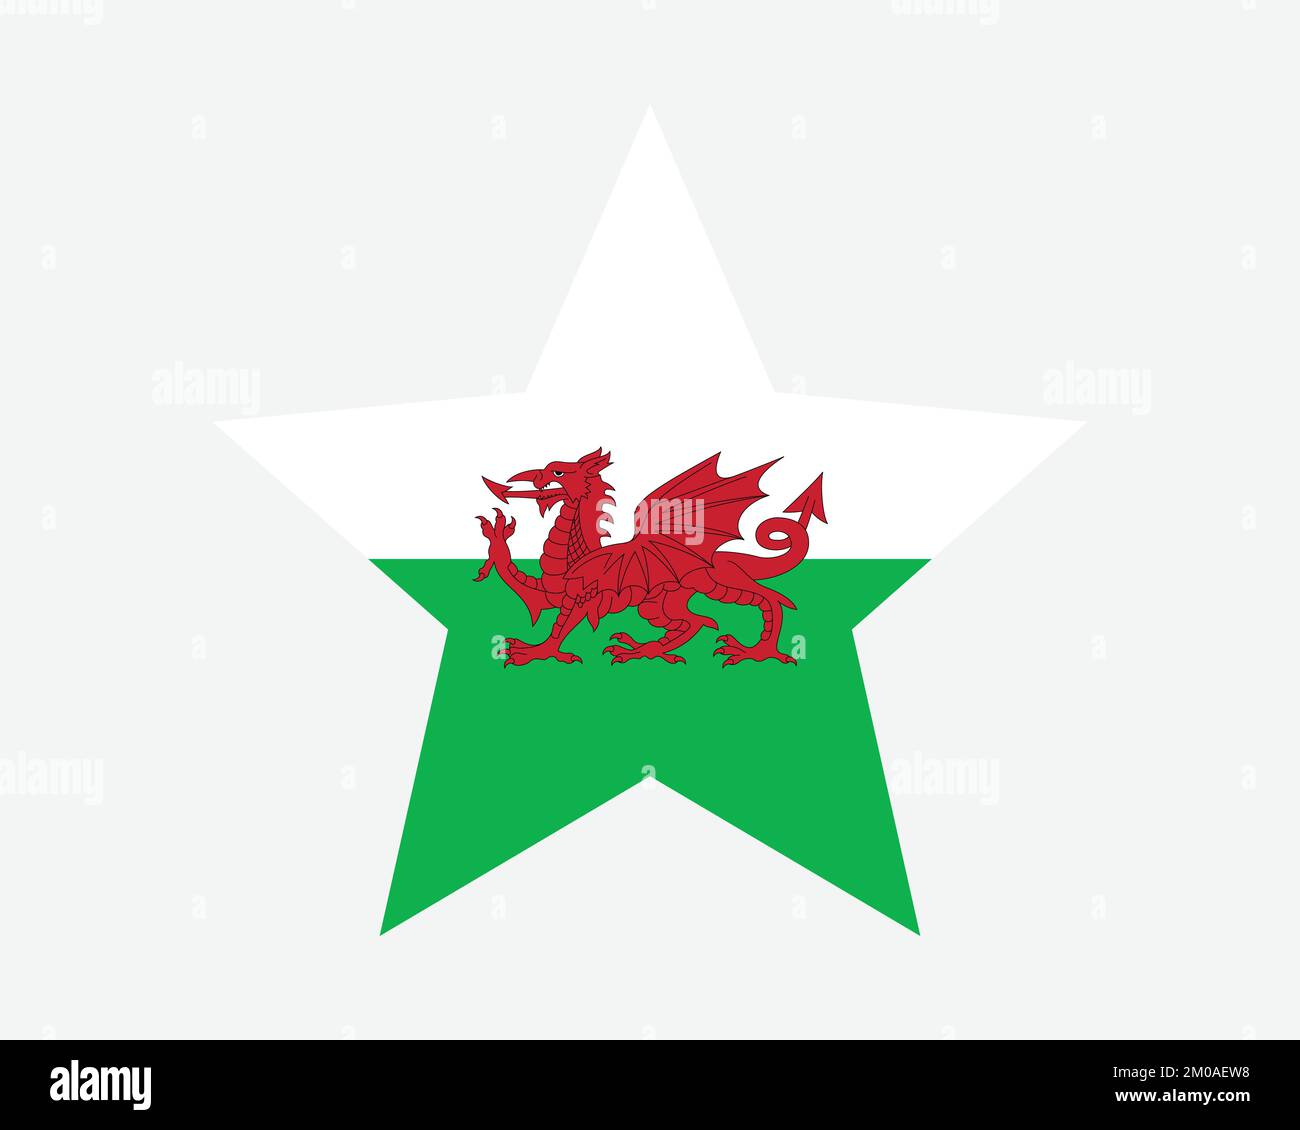 Wales Star Flag. Walisische Sternenflagge. Cymru UK Vereinigtes Königreich National Banner Symbol Symbol Vektor flache Druckvorlagen Grafik Stock Vektor